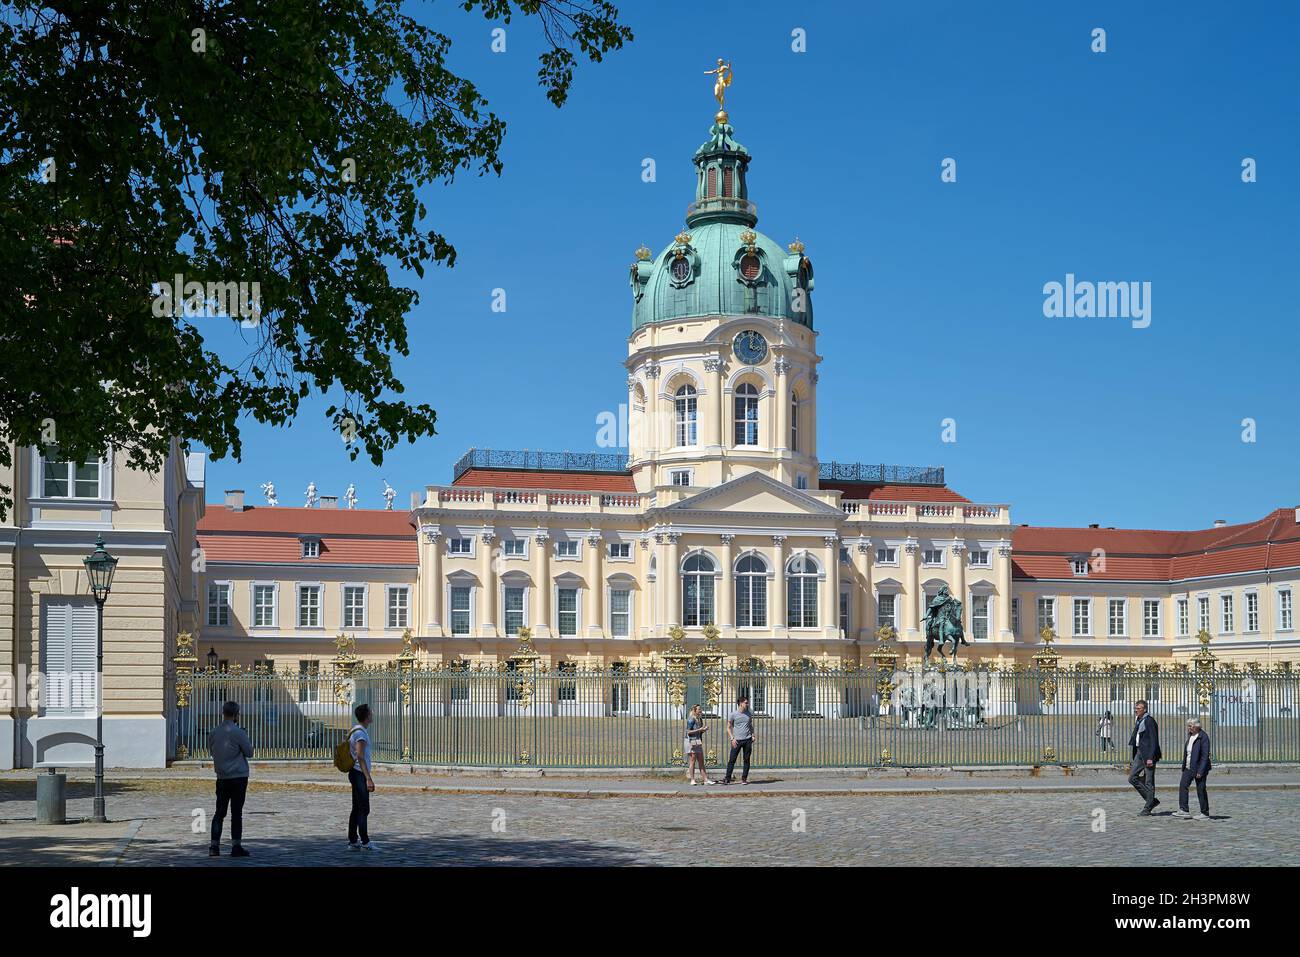 Touristes devant l'entrée du palais de Charlottenburg Berlin en Allemagne Banque D'Images